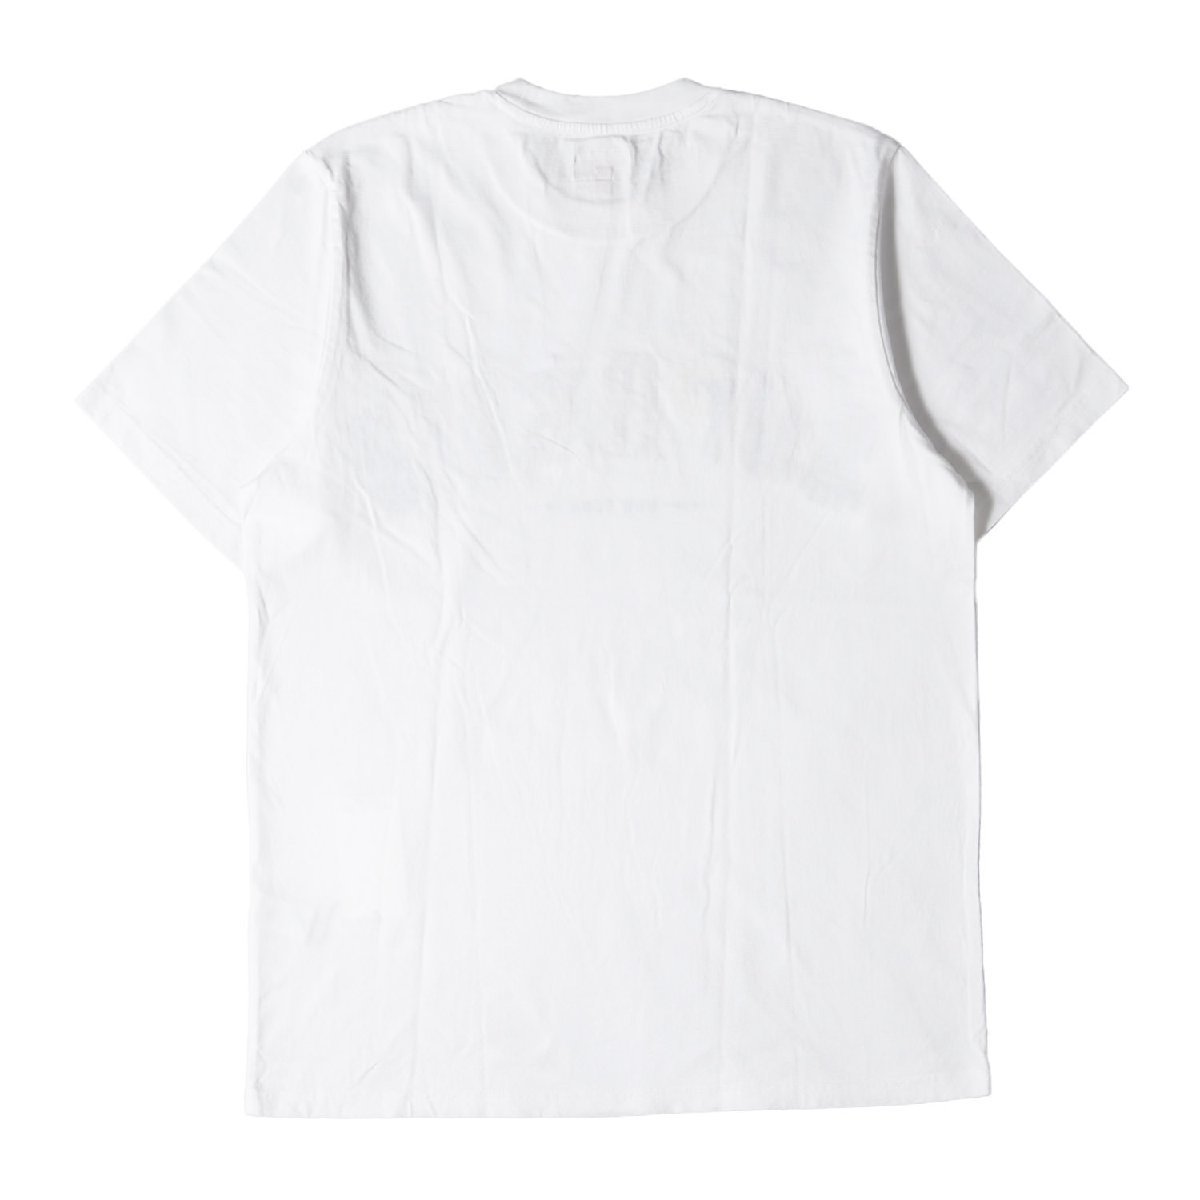 Supreme シュプリーム Tシャツ シティー アーチロゴ クルーネックTシャツ City Arc Tee 19SS ホワイト 白 M トップス カットソー 半袖_画像2